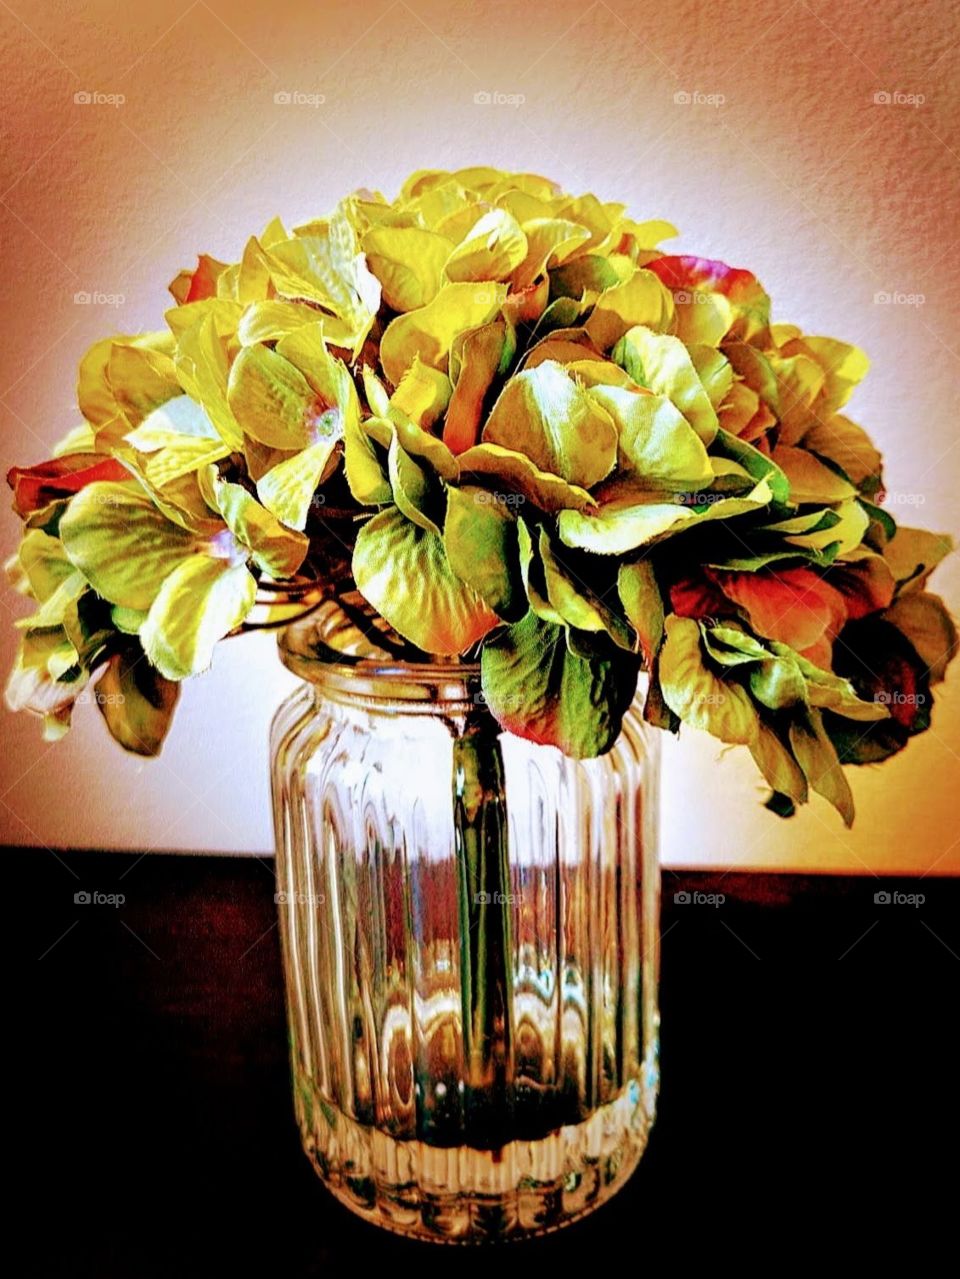 green Hydrangea flowers in a glass vase